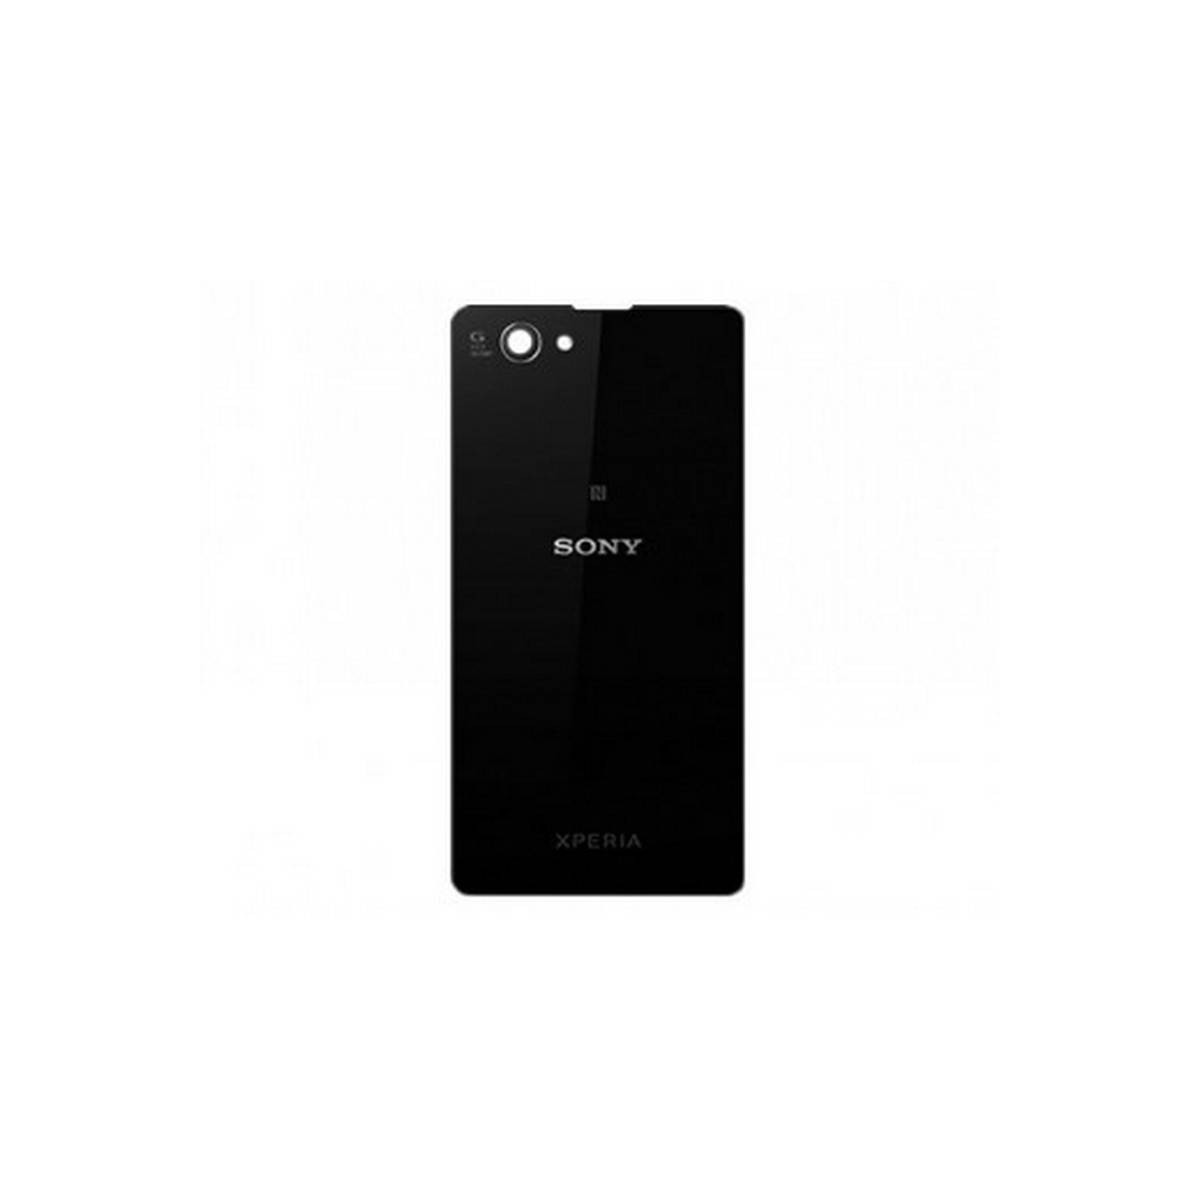 Tapa Traseira Sony Xperia Z1 Compact D5503 preto